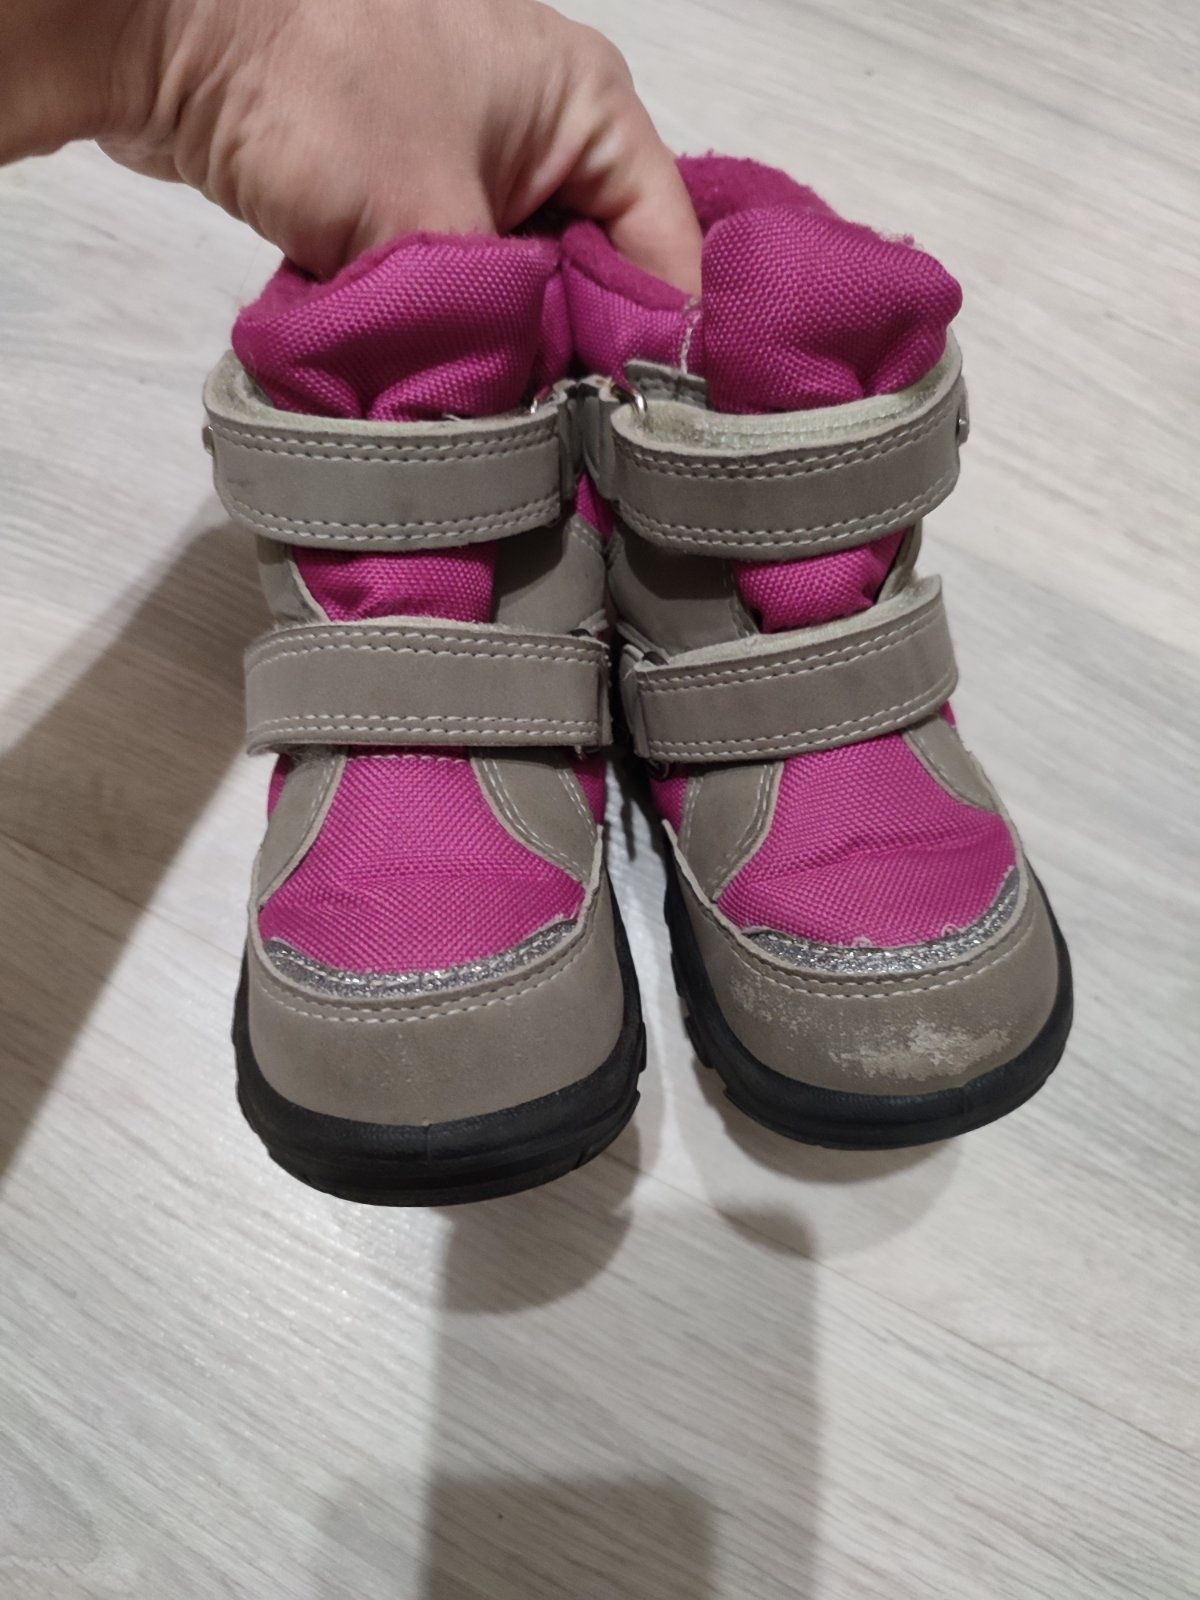 Зимові  теплі сапожки, ботинки, чобітки для дівчинки, 14.5 см устілка